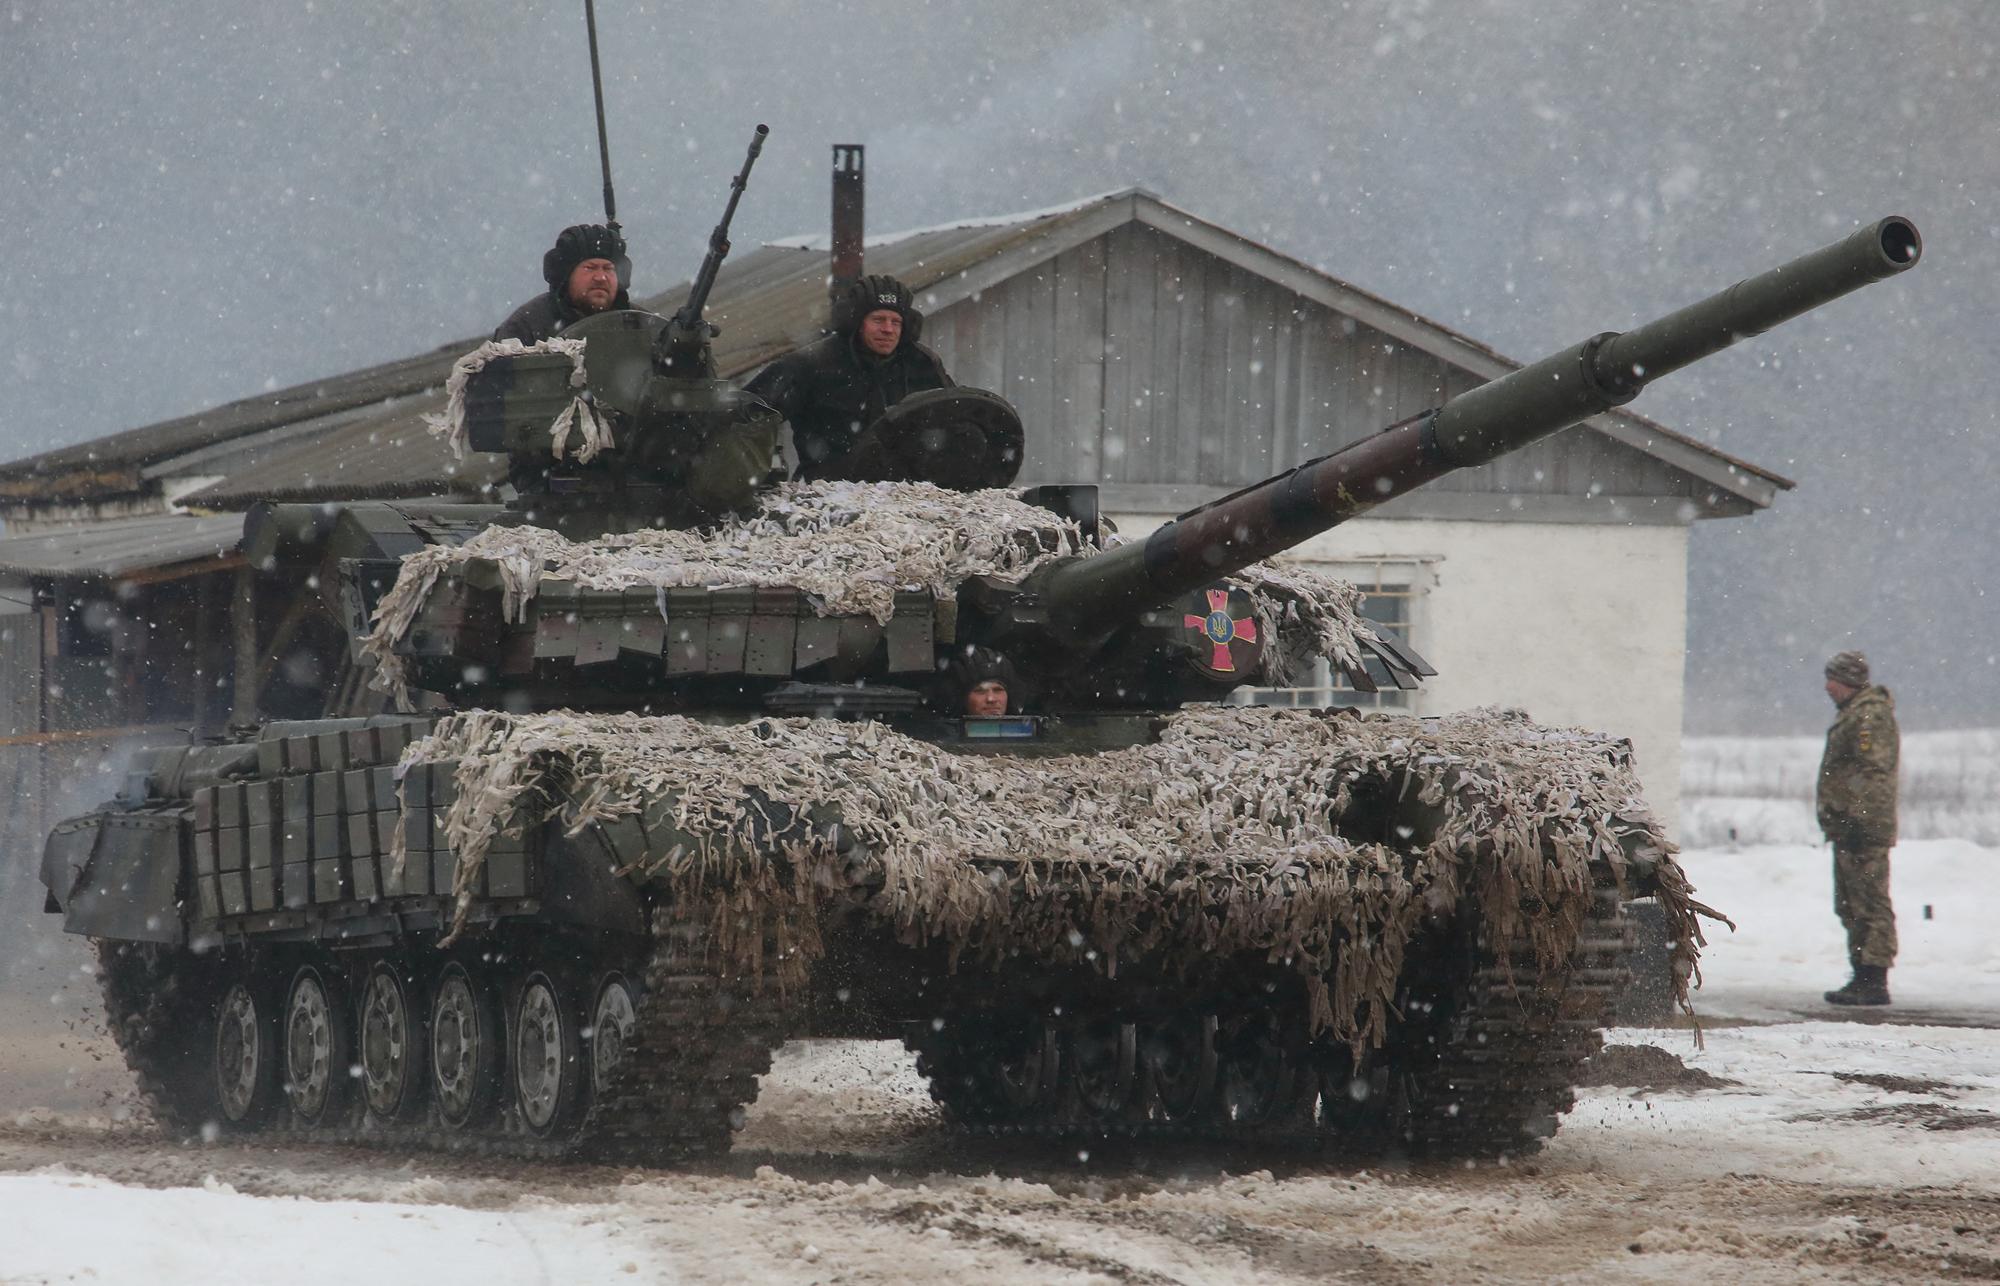 Des membres des forces armées ukrainiennes participent à un exercice dans la région de Kharkov, le 10 février 2022. [reuters - Vyacheslav Madiyevskyy]